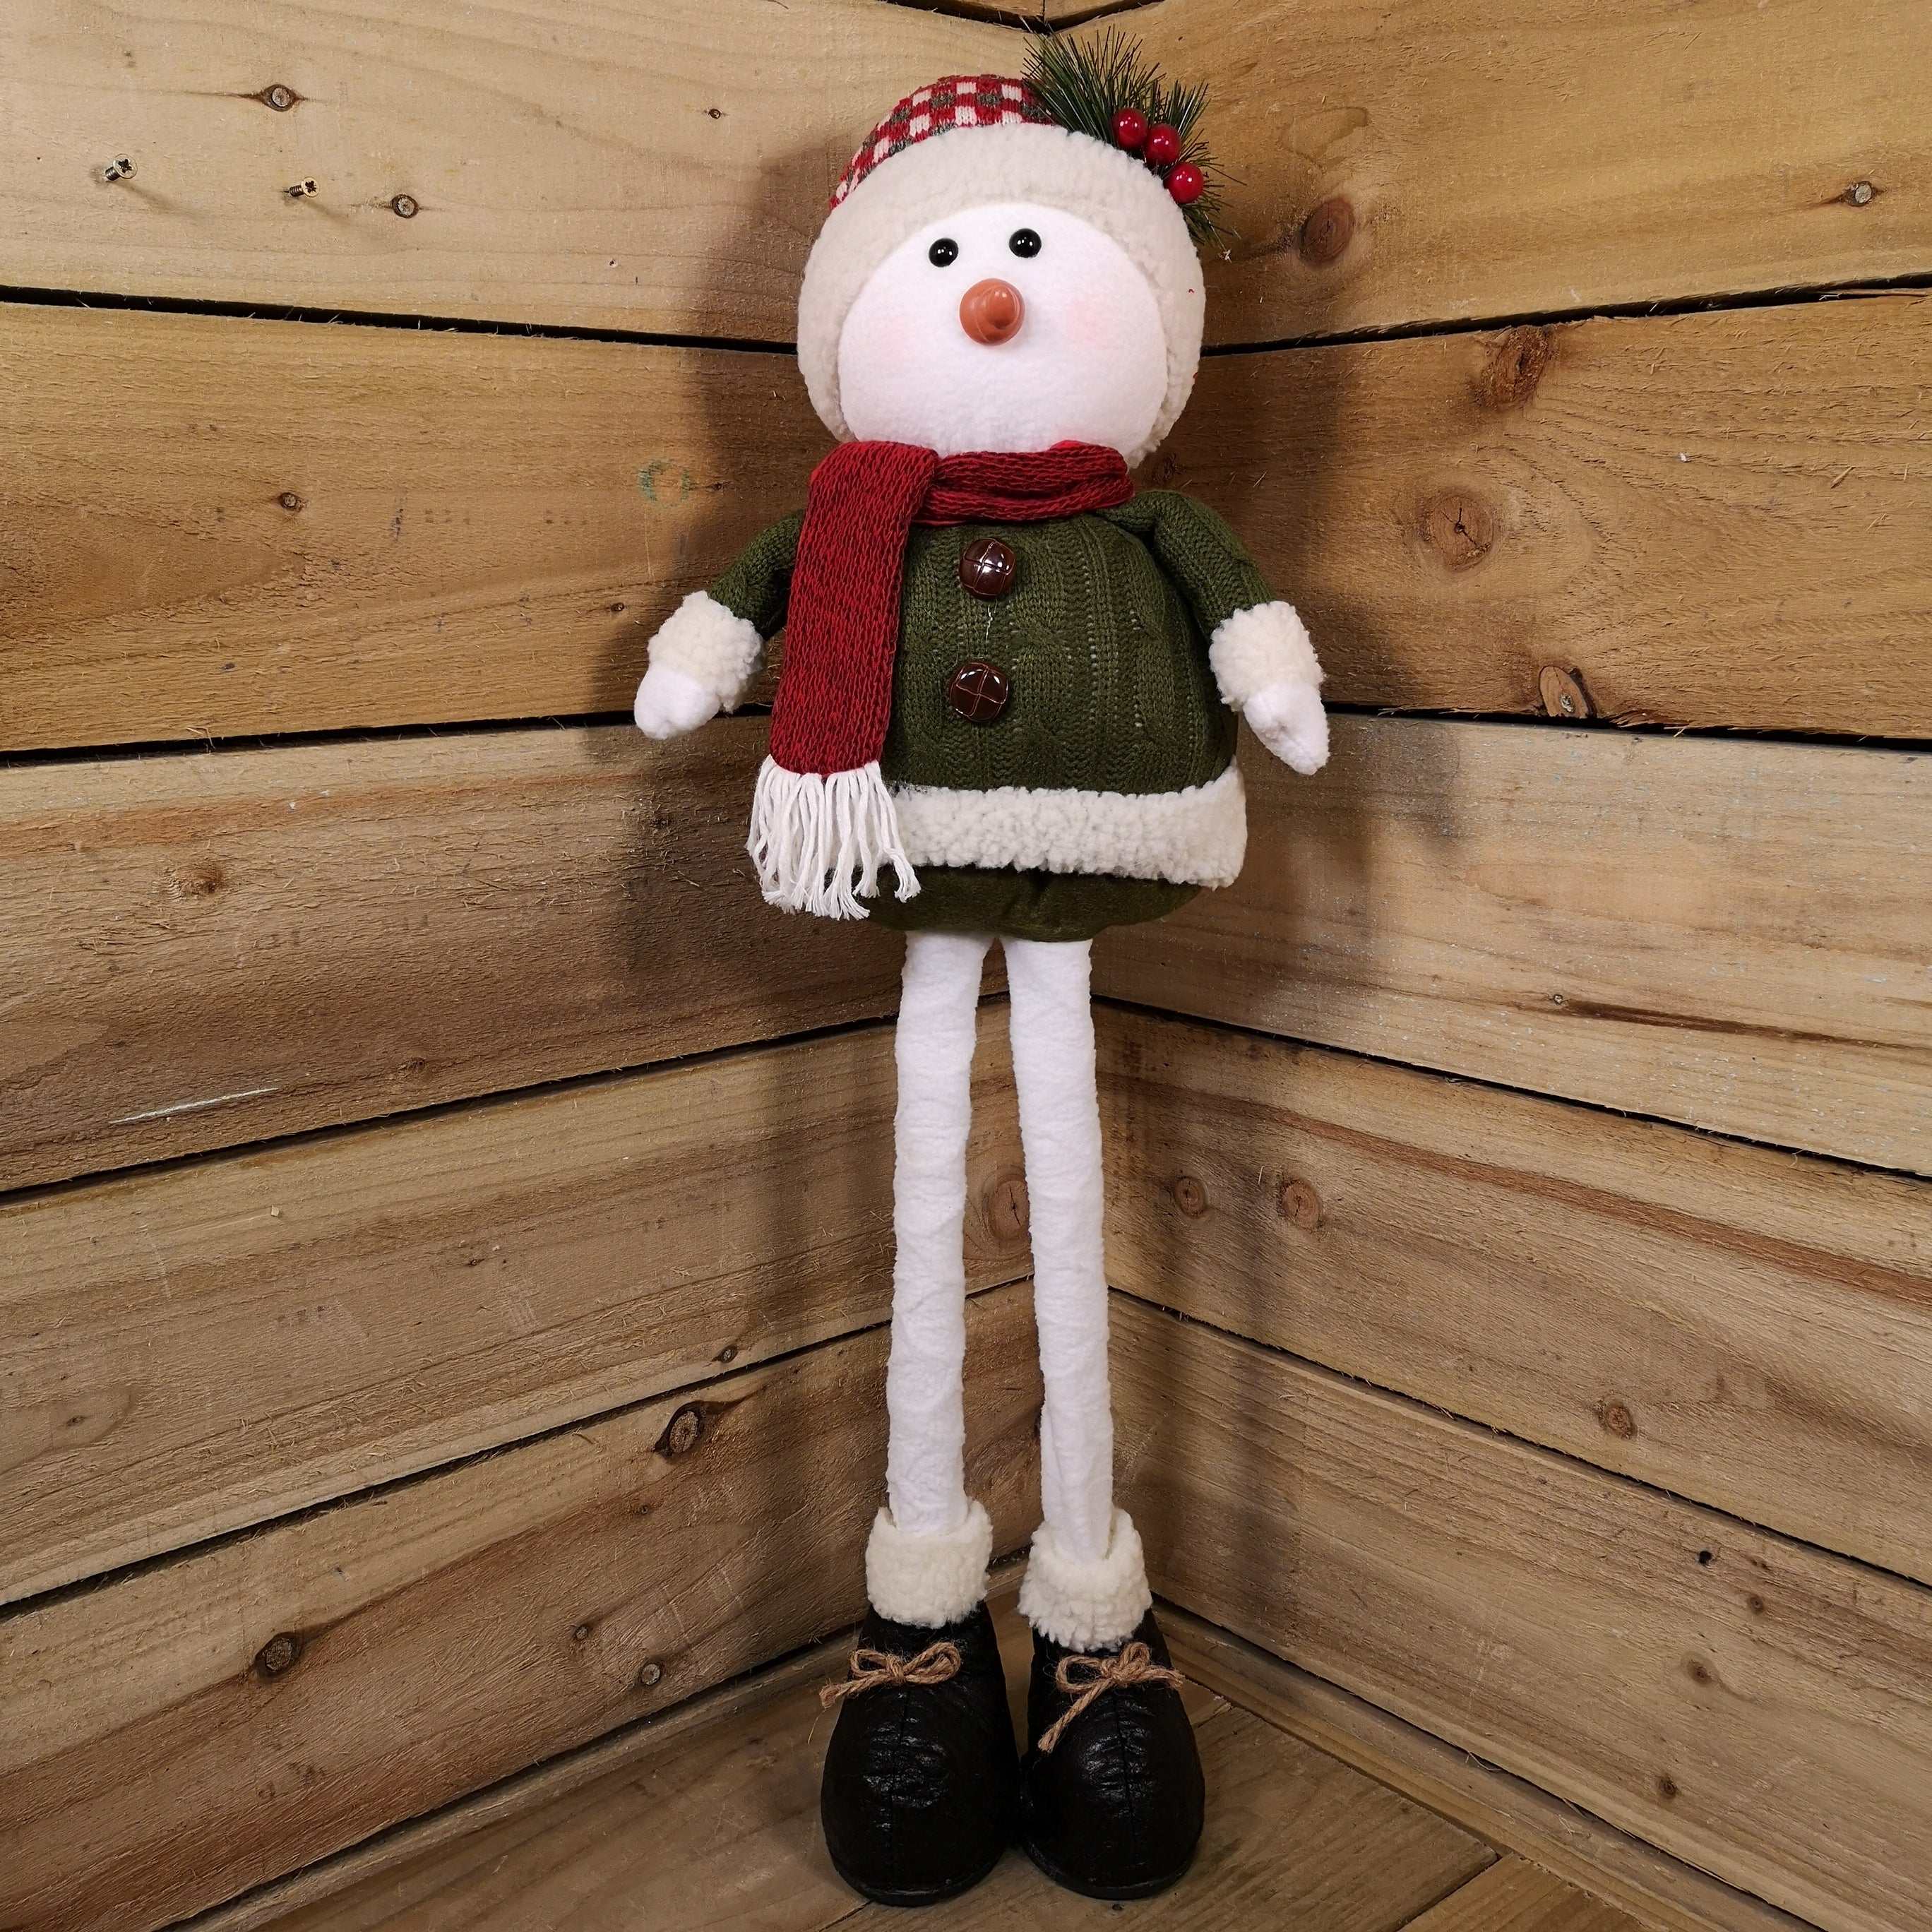 Decorative Christmas 71cm Plush Snowman with Extendable Legs